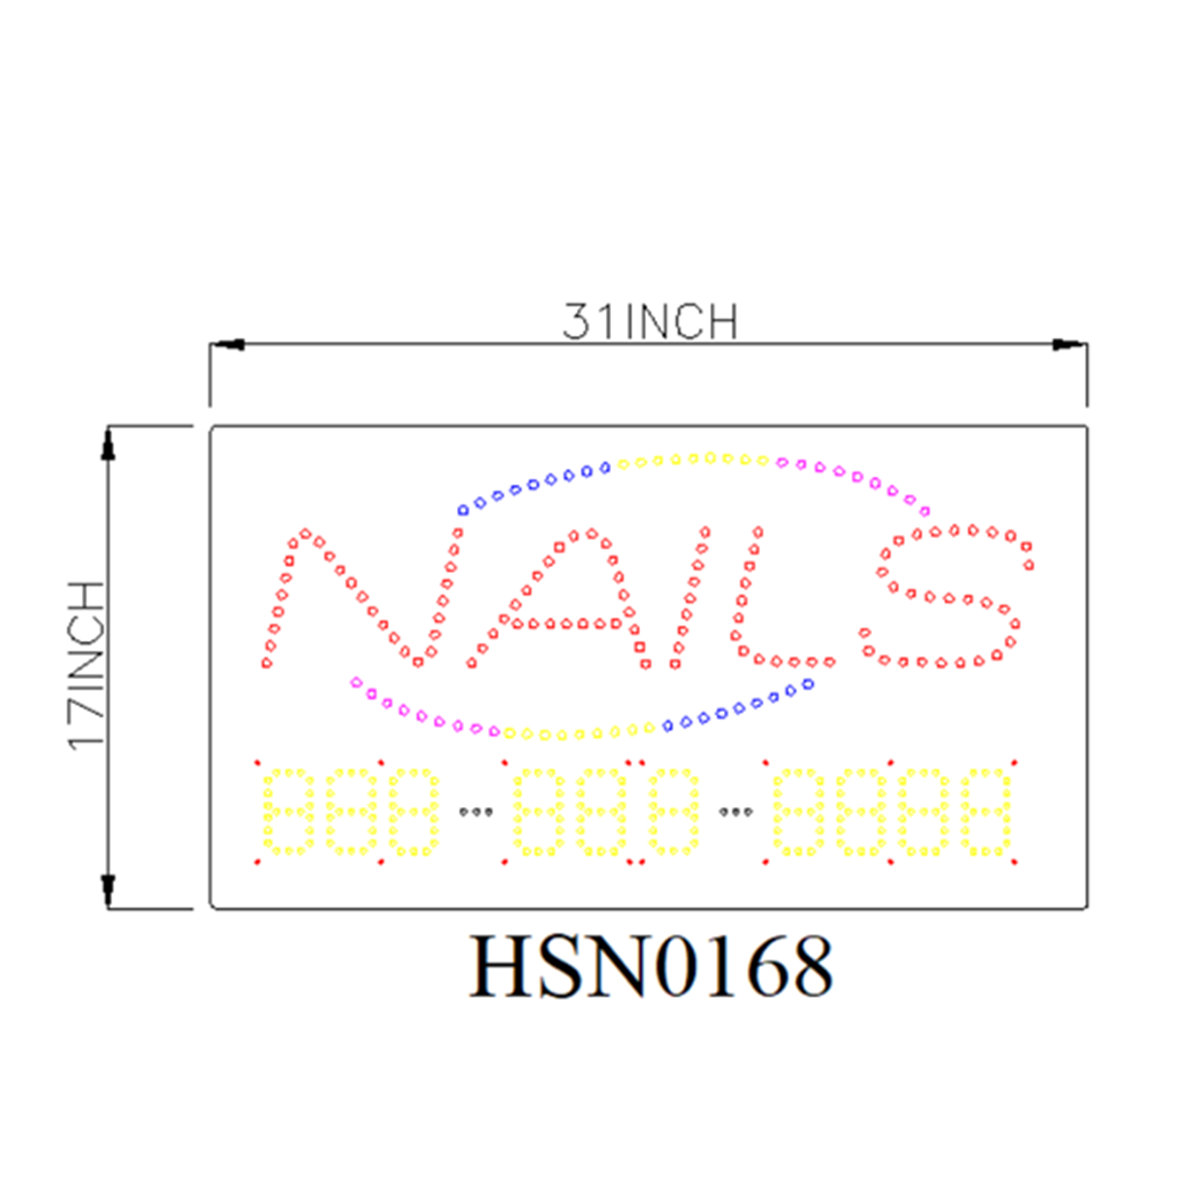 nails customized led sign